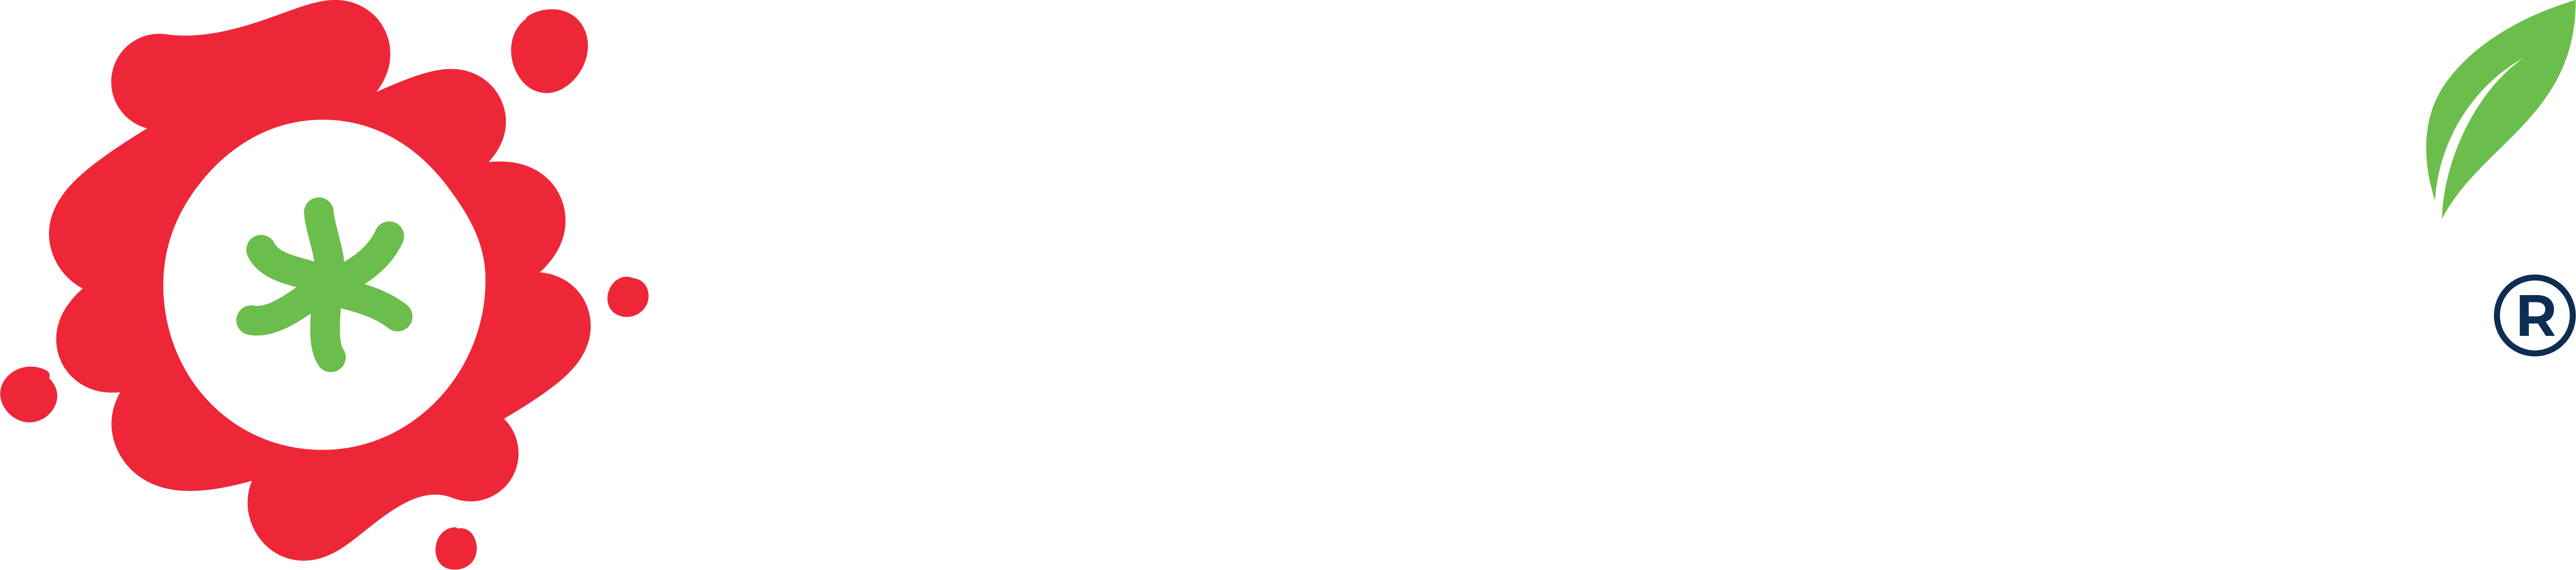 Karry Food Industries